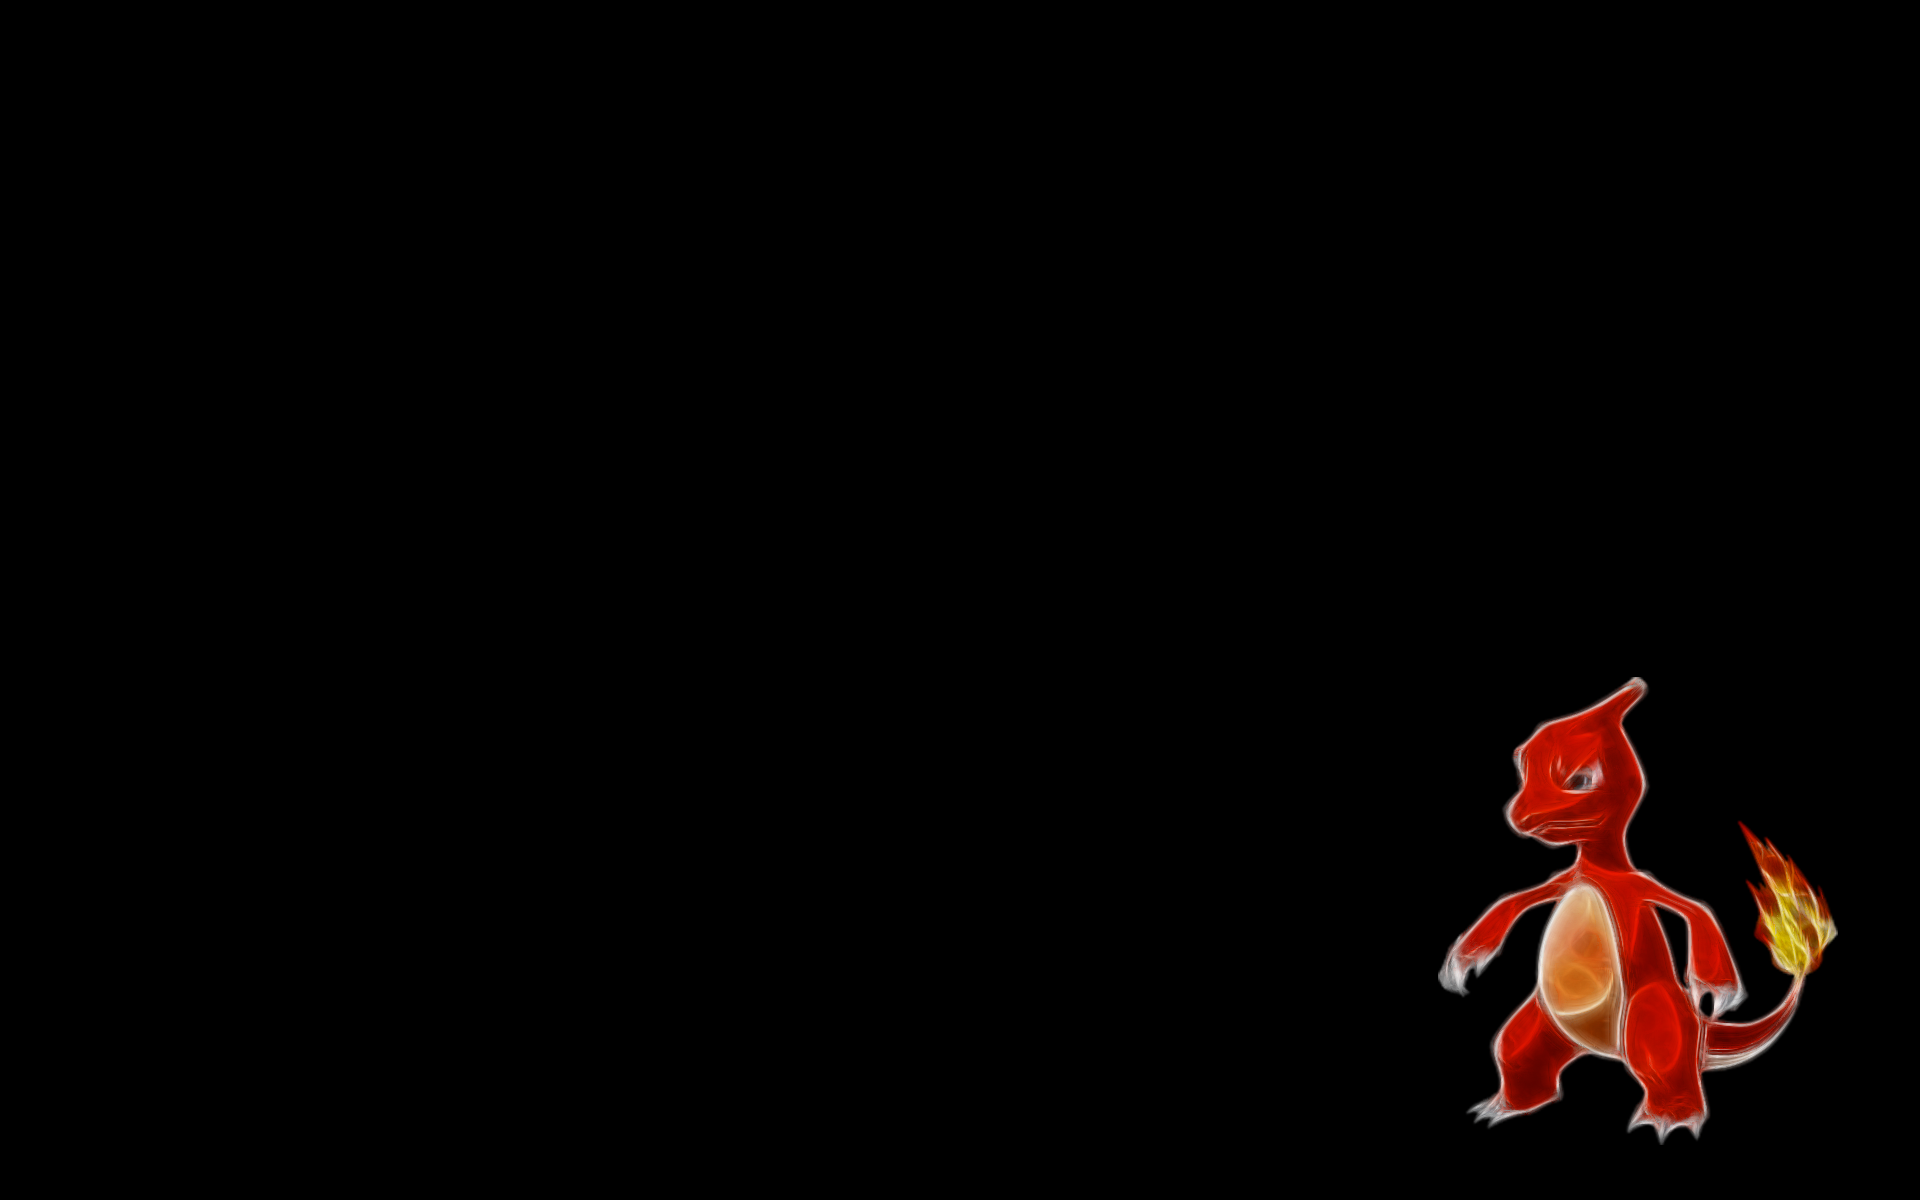 Pokemon, Fractalius, Charmeleon, simple background, black background - desktop wallpaper